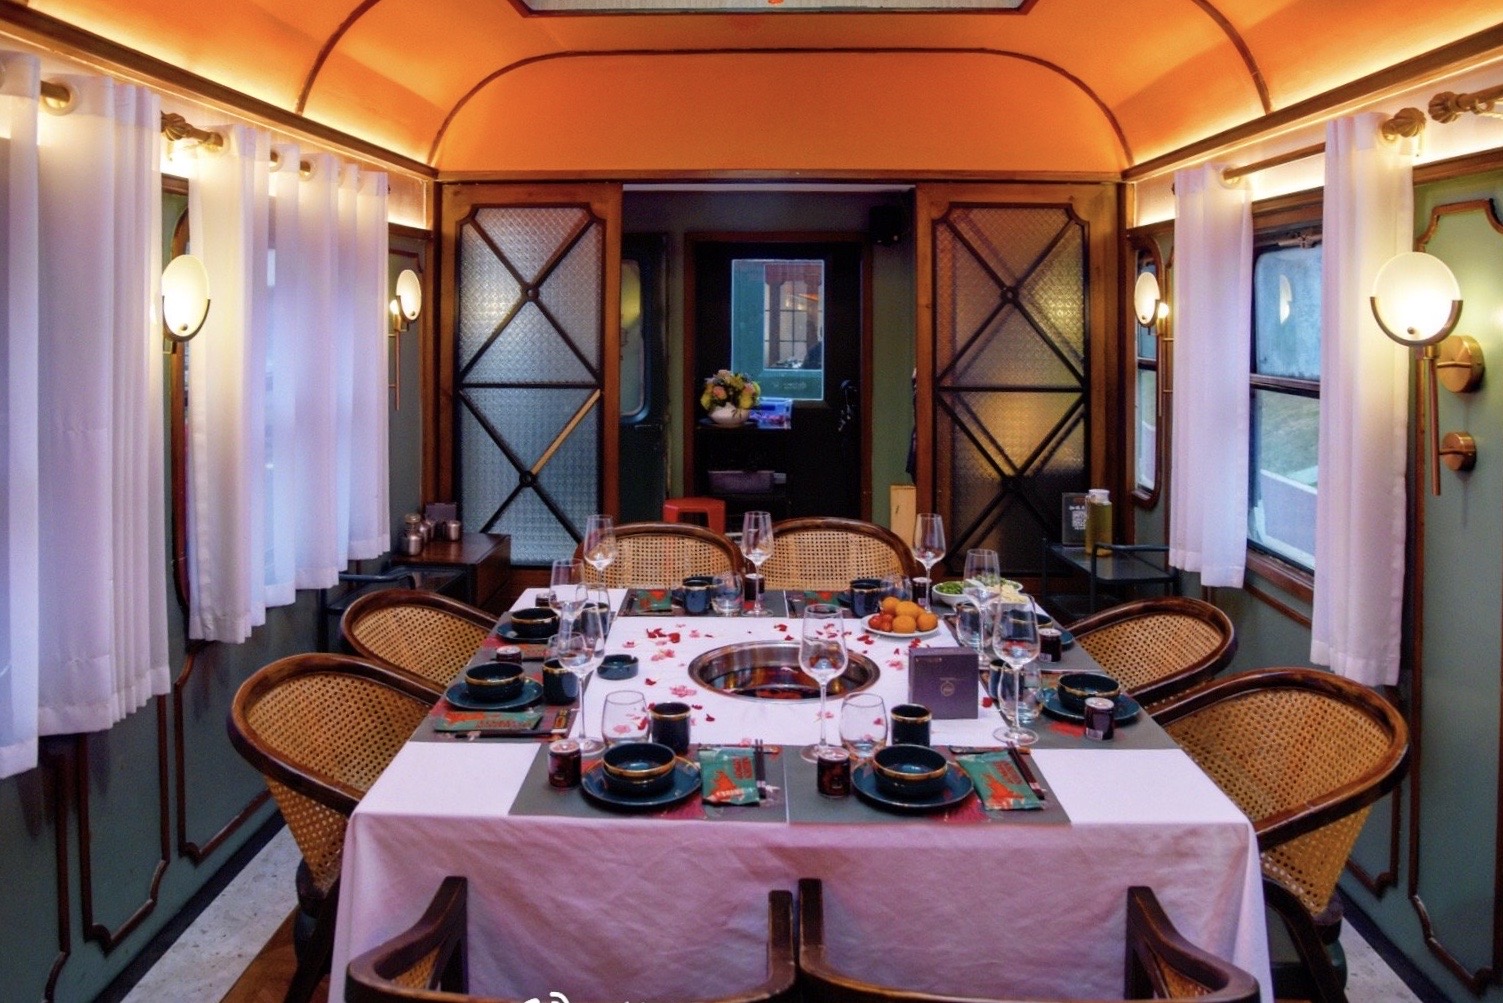 火车上的餐厅「鸣日厨房」，台湾 | Designer by J.C. Architecture - 主题餐厅 - 餐厅LOGO-VI空间设计-全球餐饮研究所-视觉餐饮